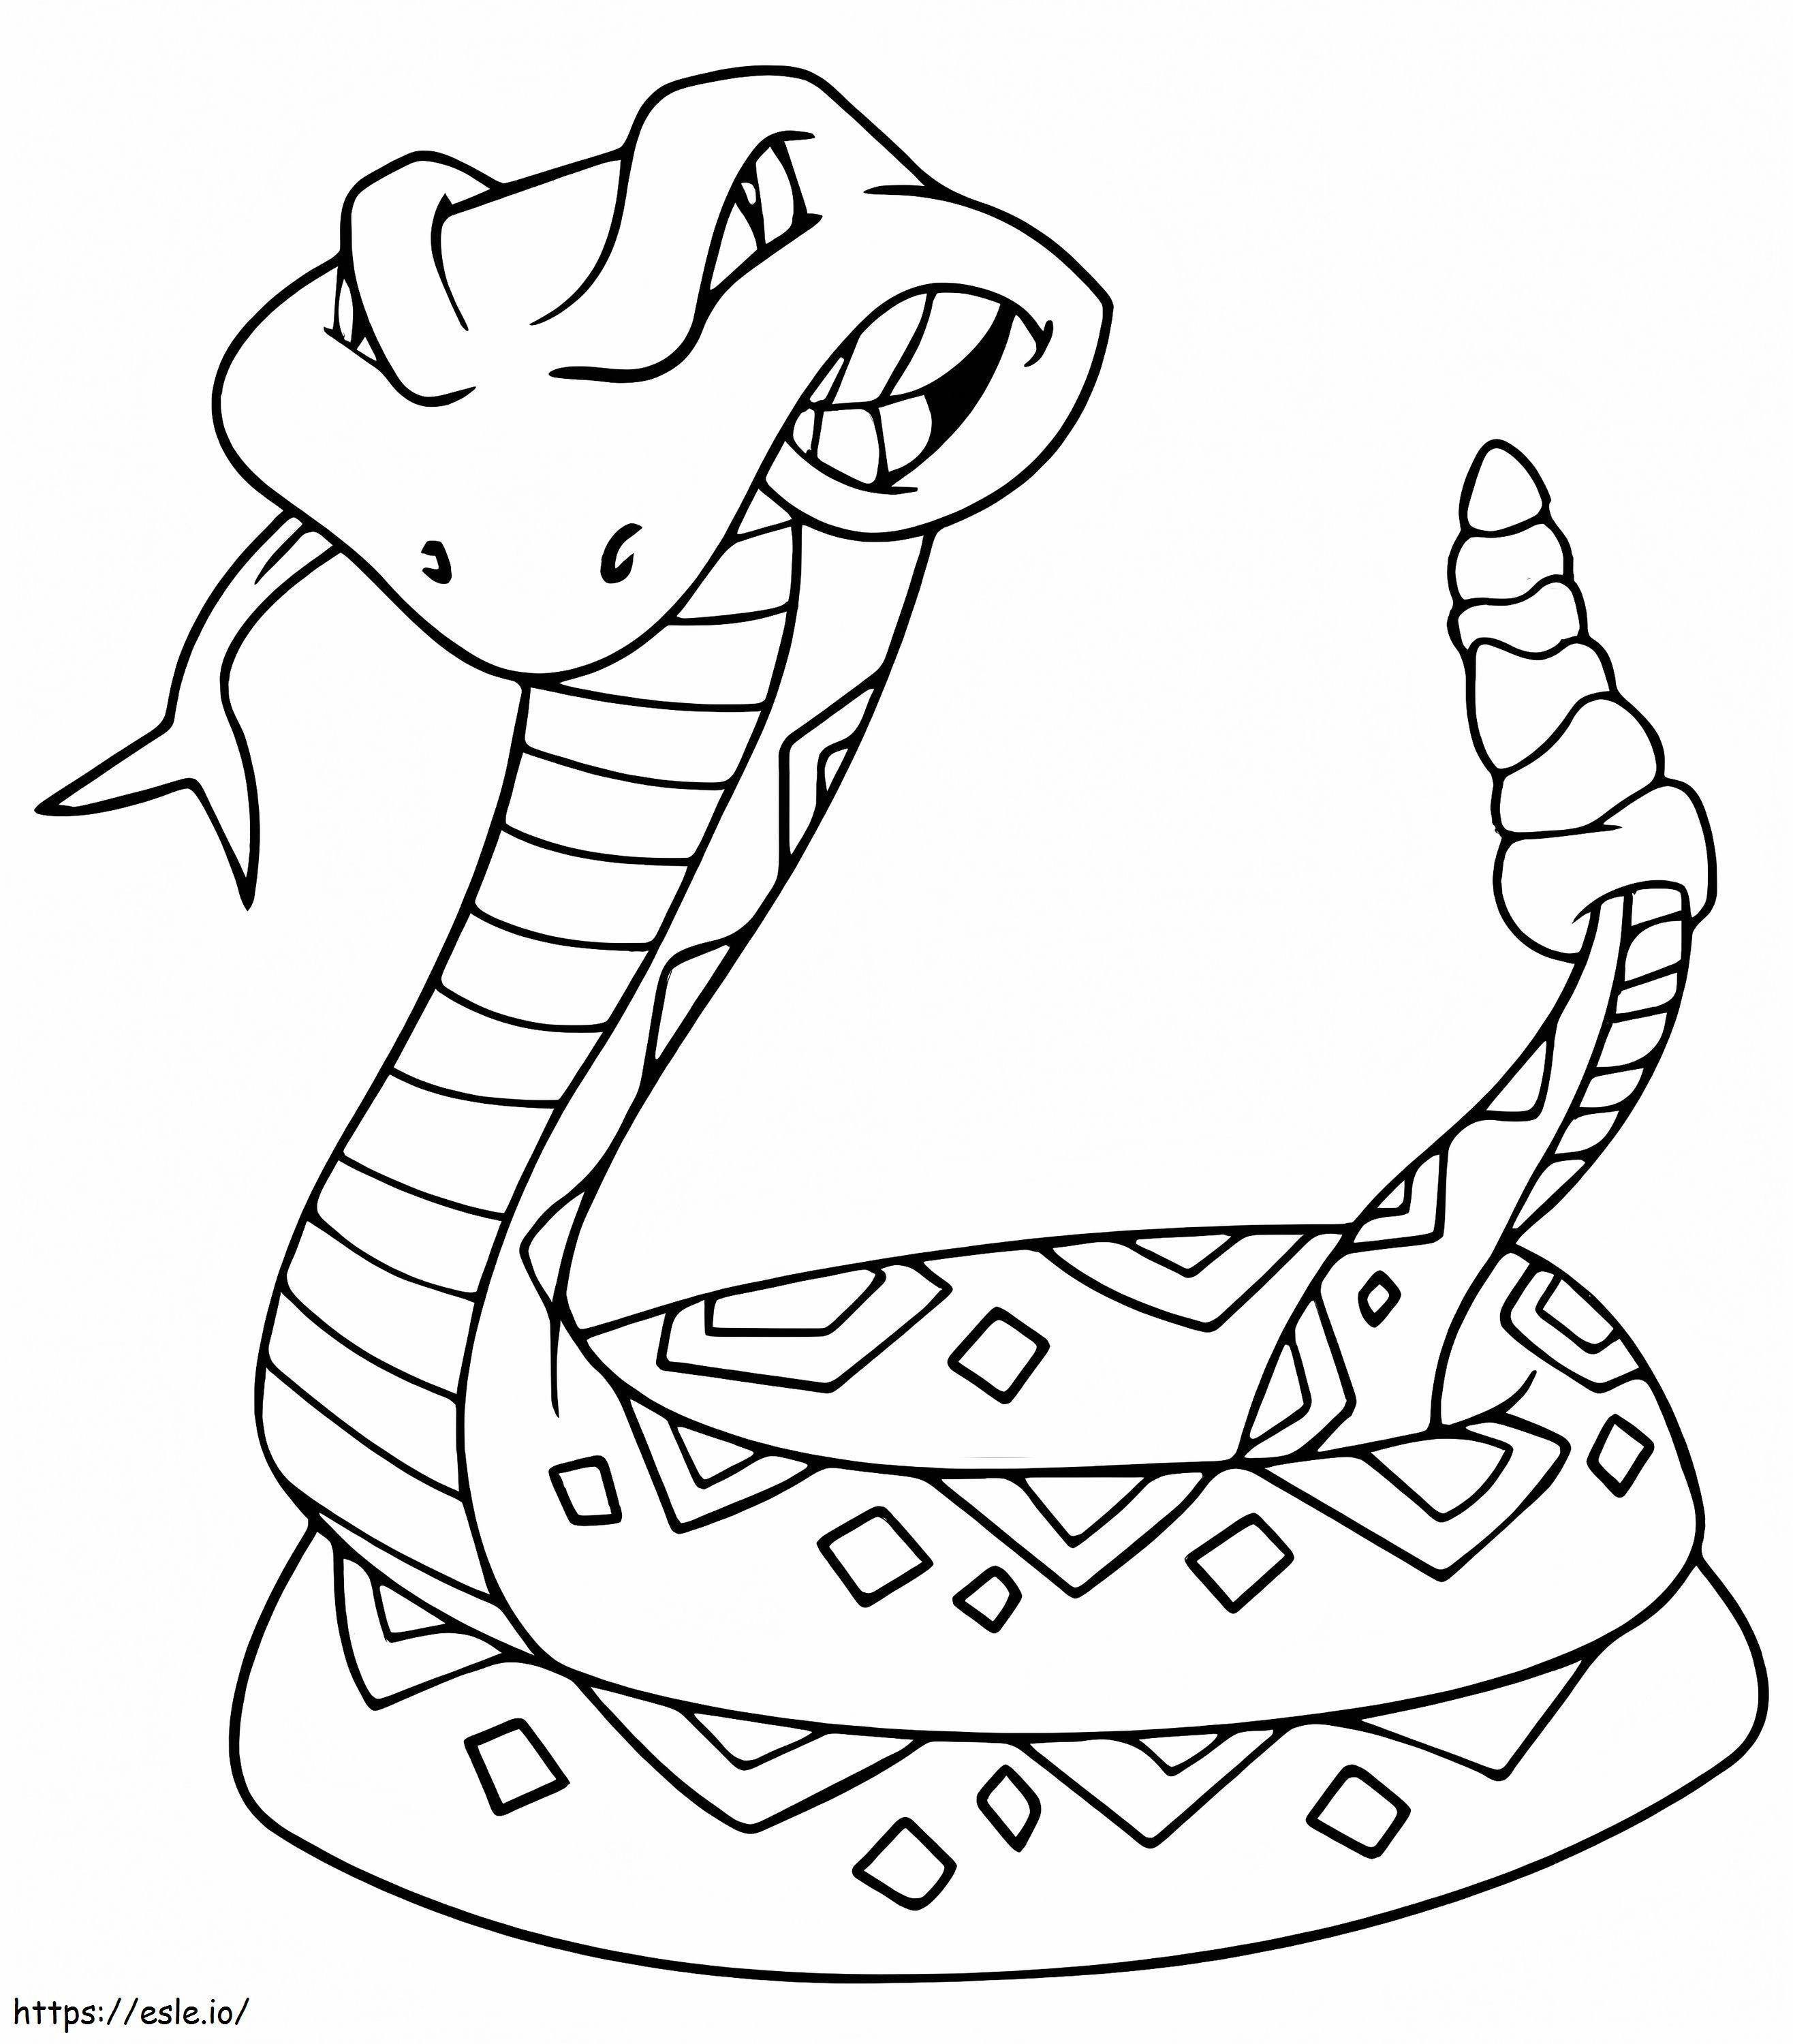 Cartoon-Kobra ausmalbilder